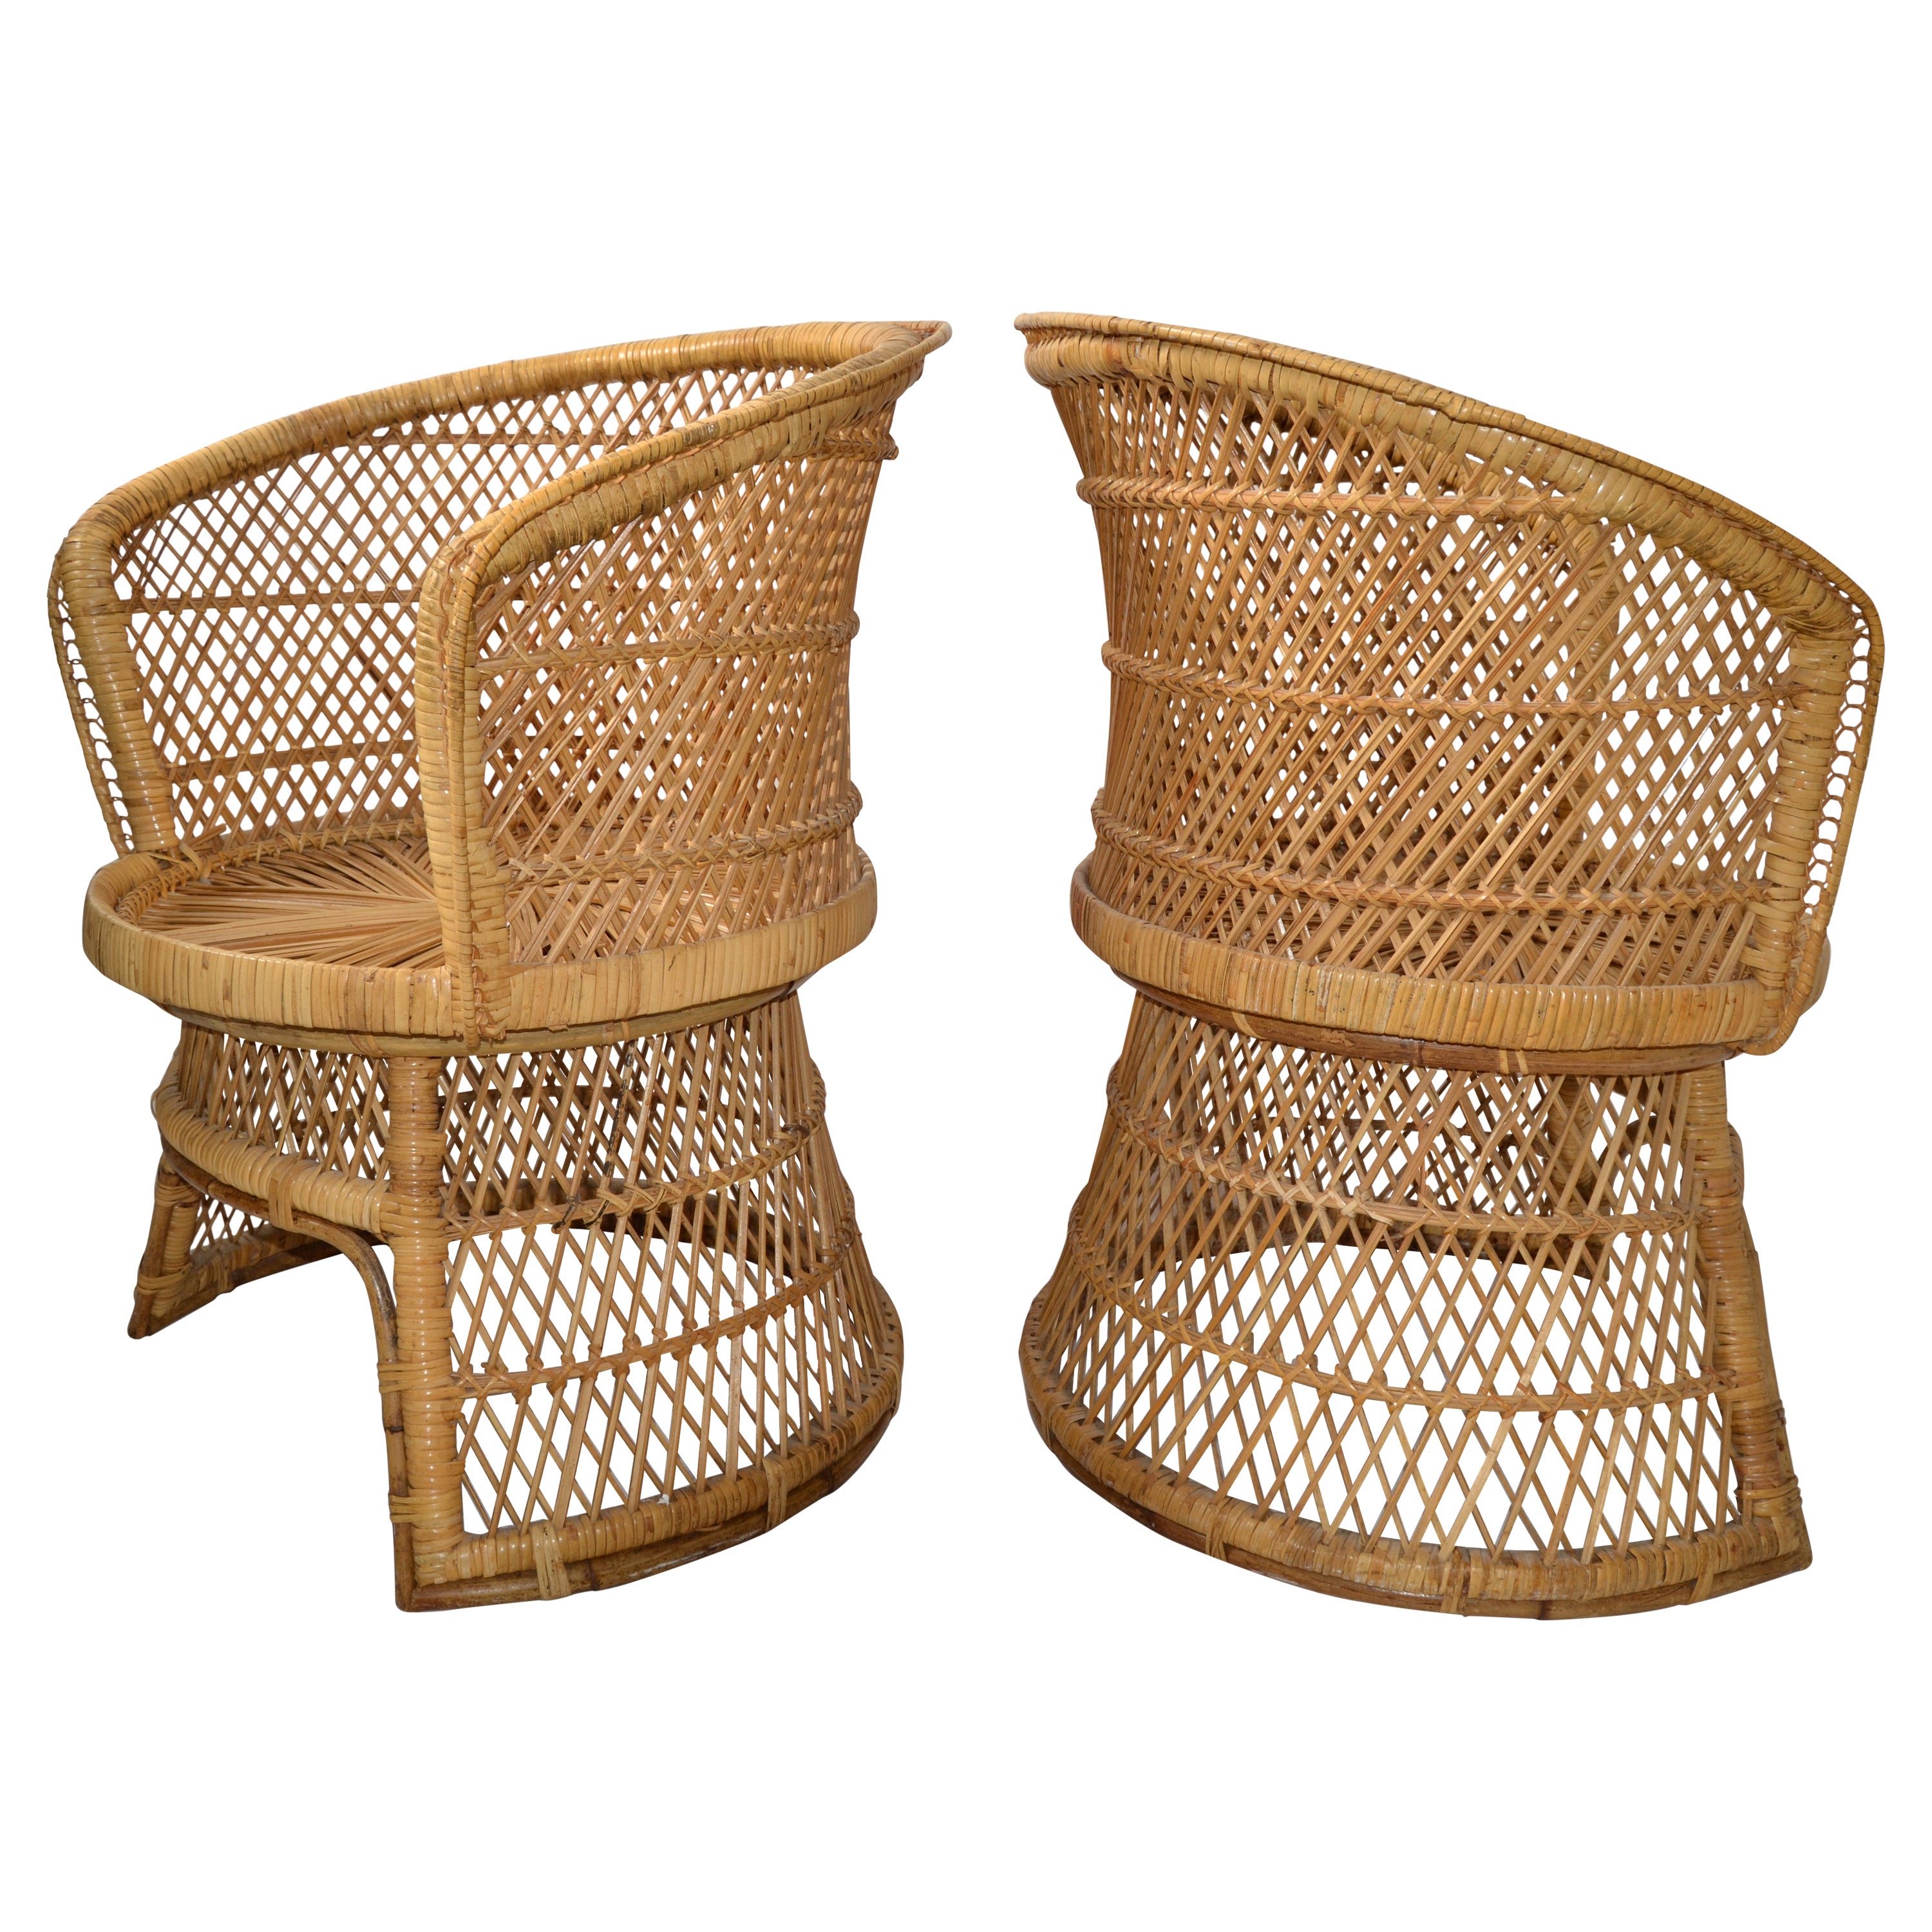 Ensemble de 2 fauteuils vintage en rotin et bambou de style chinoiserie tissés et fabriqués à la main